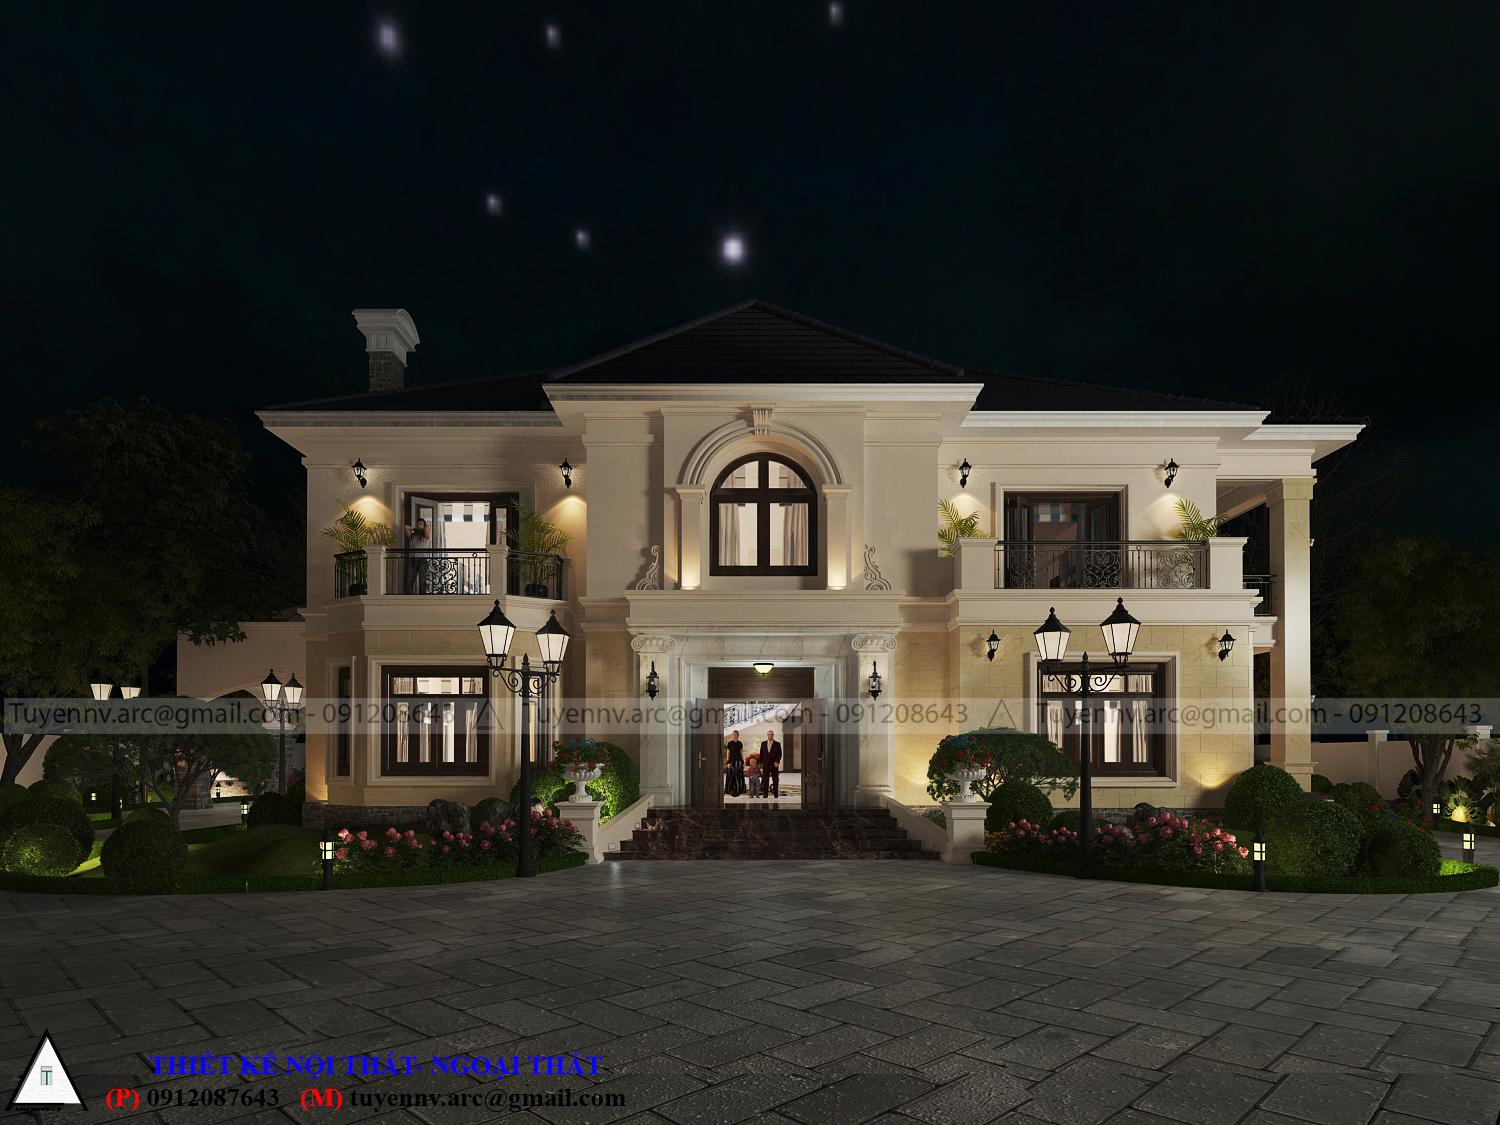 thiết kế Biệt Thự 2 tầng tại Vĩnh Phúc Biệt thư sân vườn 2 tầng 9 1549857985